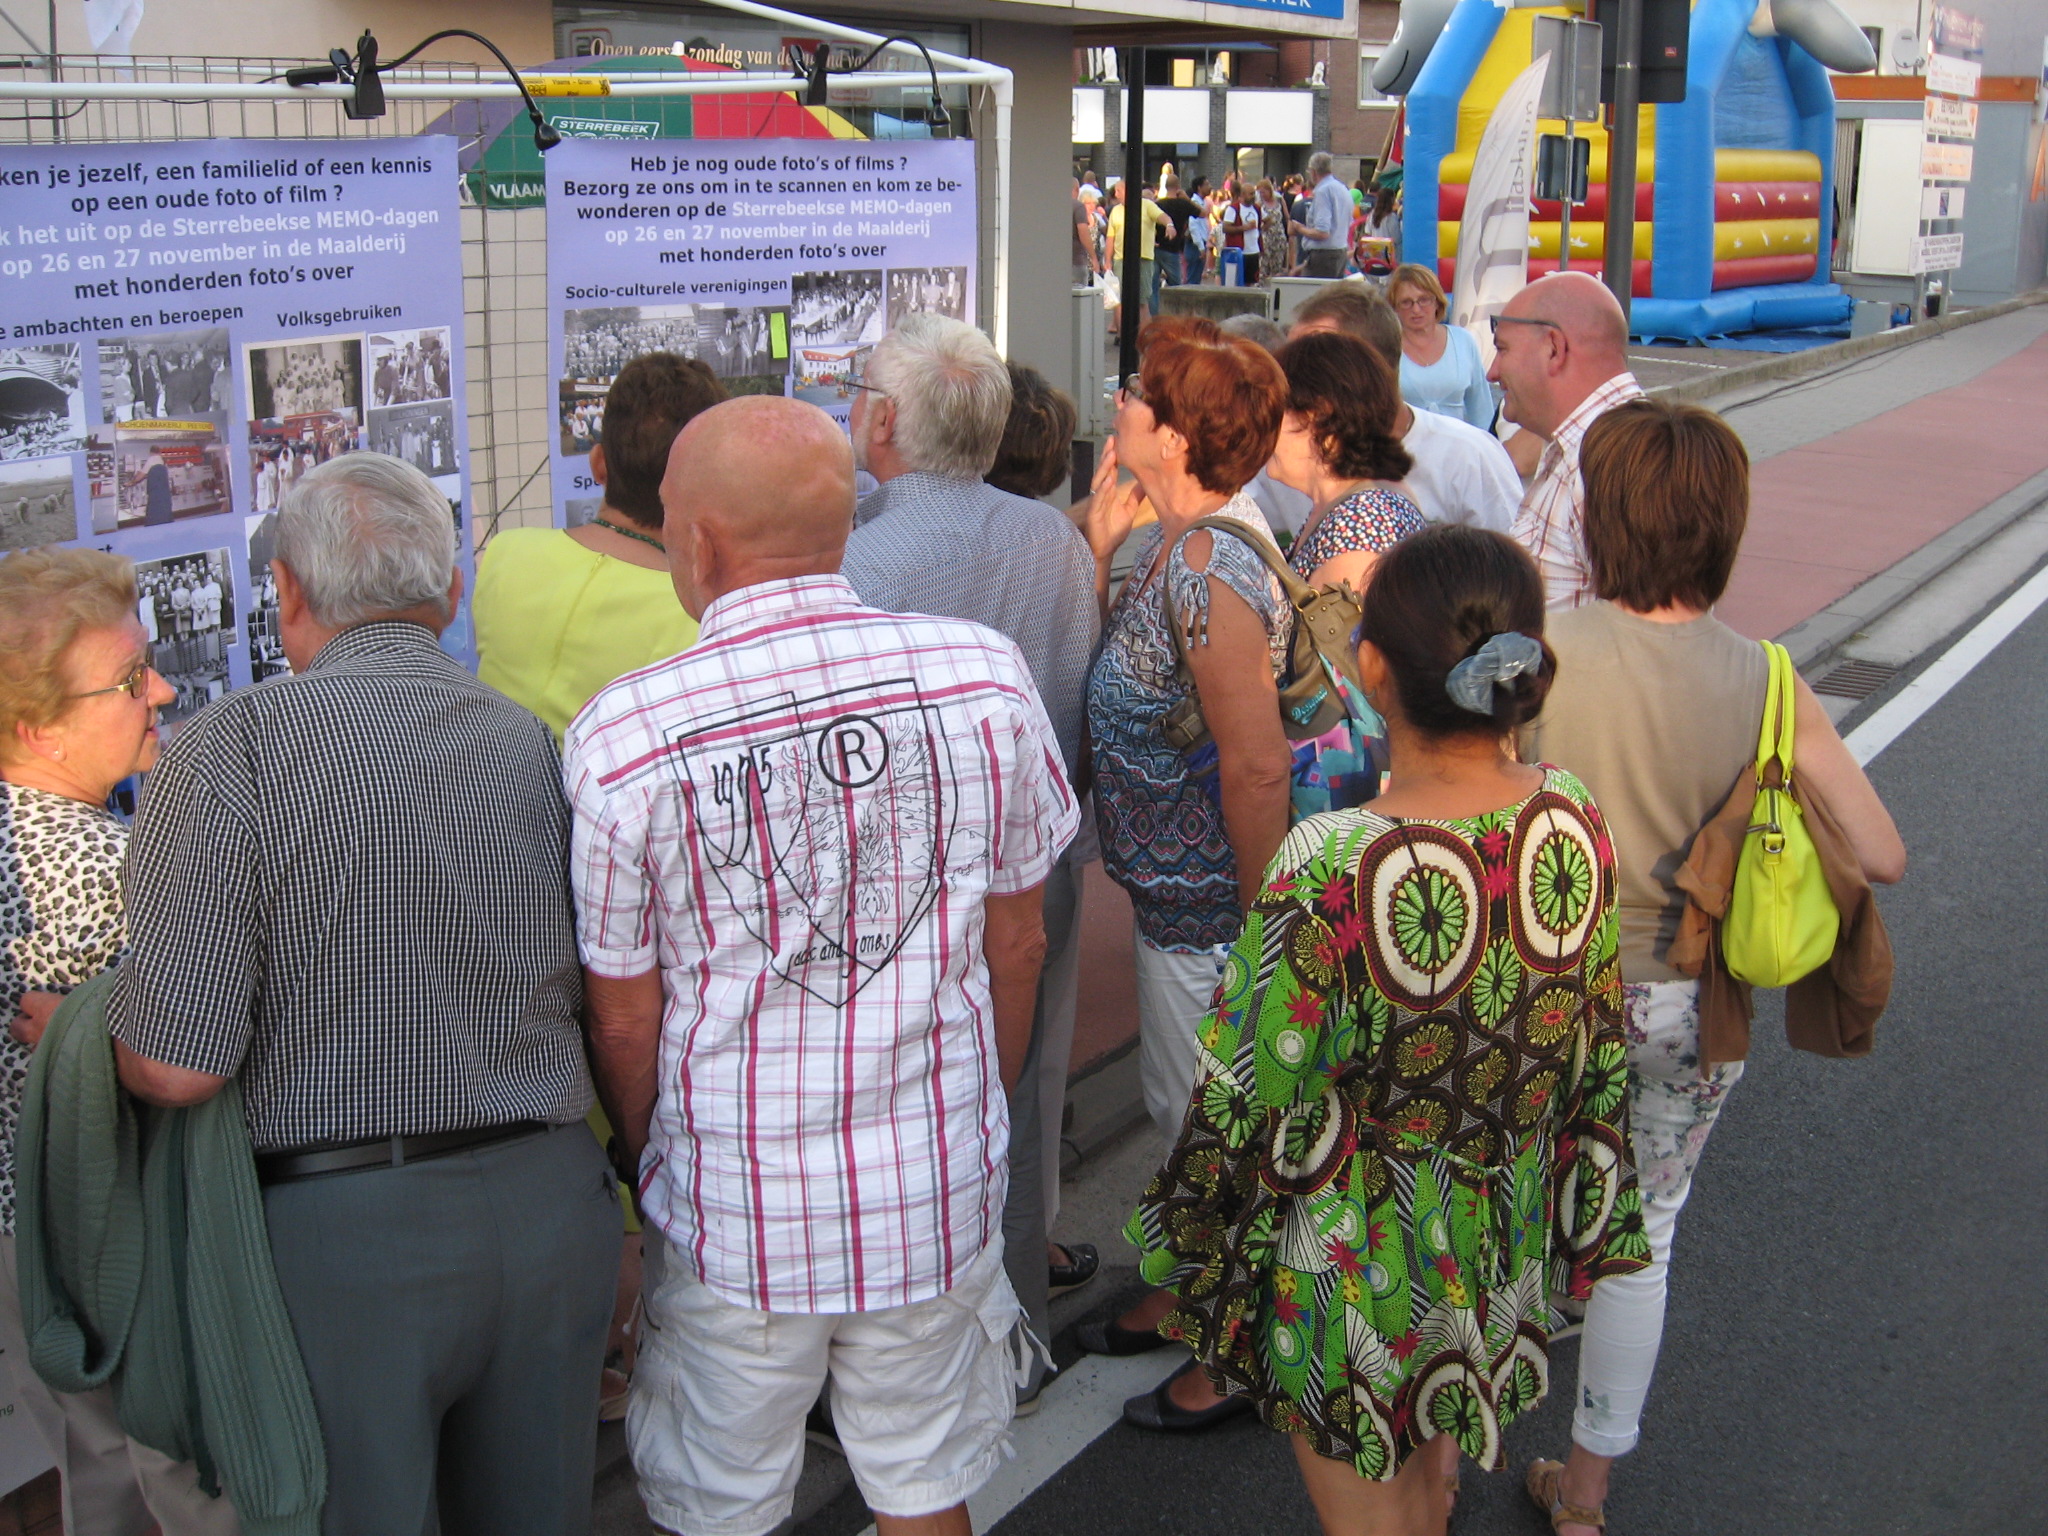 Infostand op de Sterrebeekse avondmarkt: een voorsmaakje van de tentoonstelling RETRO STERREBEEK